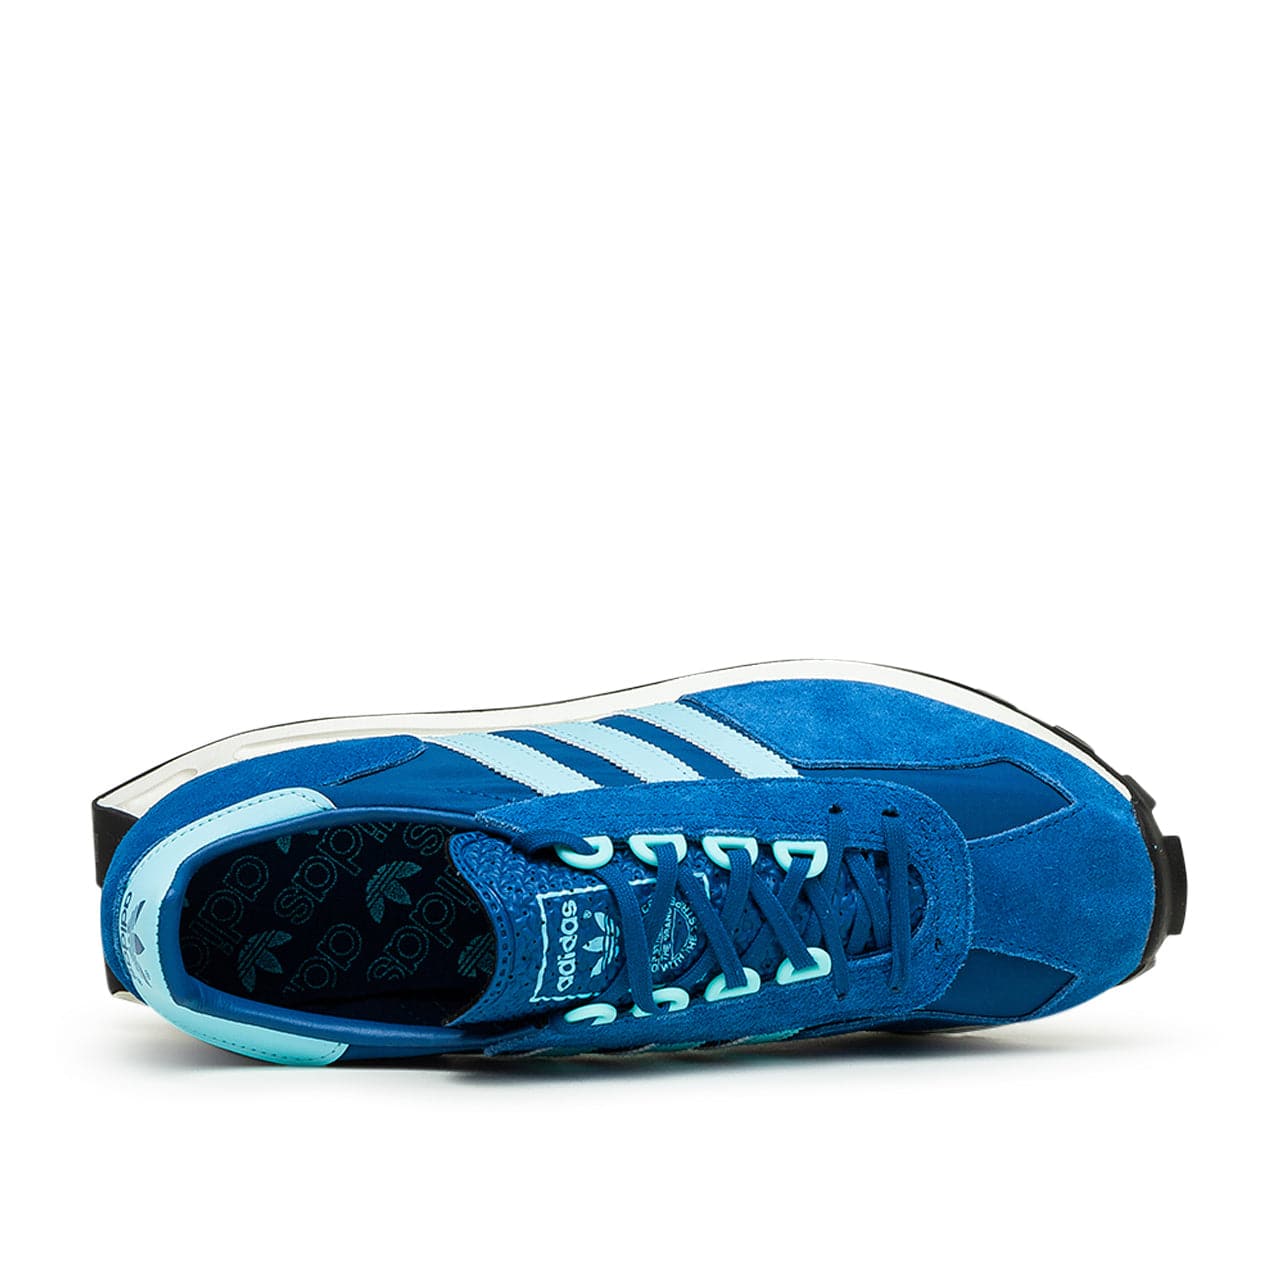 adidas Racing 1 (Blau / Hellblau)  - Allike Store